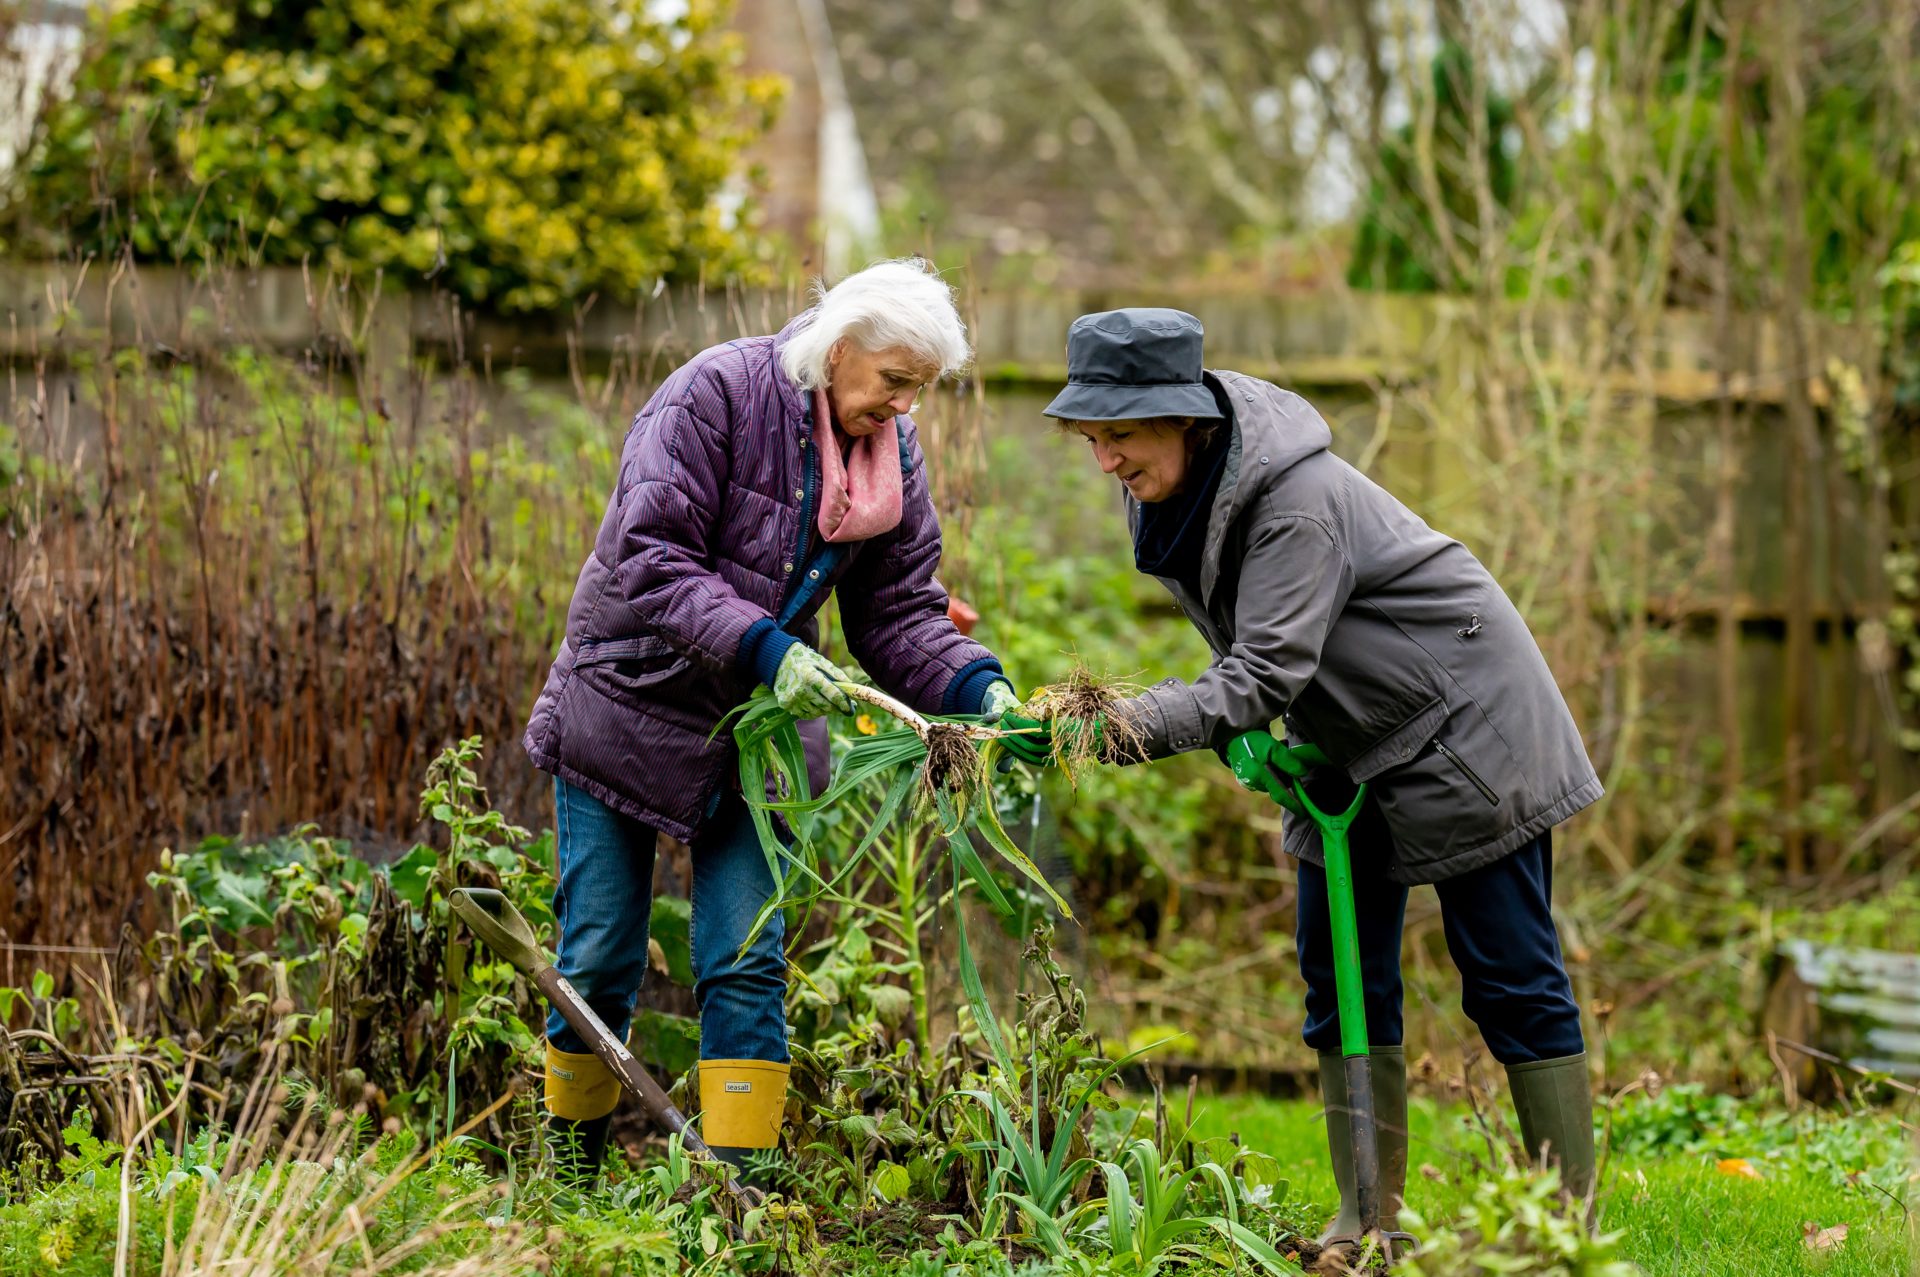 Una de las claves para mantenerse en forma es el movimiento natural, por ejemplo, el cuidado de un jardín. Foto de Centre for Ageing Better: https://www.pexels.com/es-es/foto/gente-tierra-mujer-jardin-7849457/